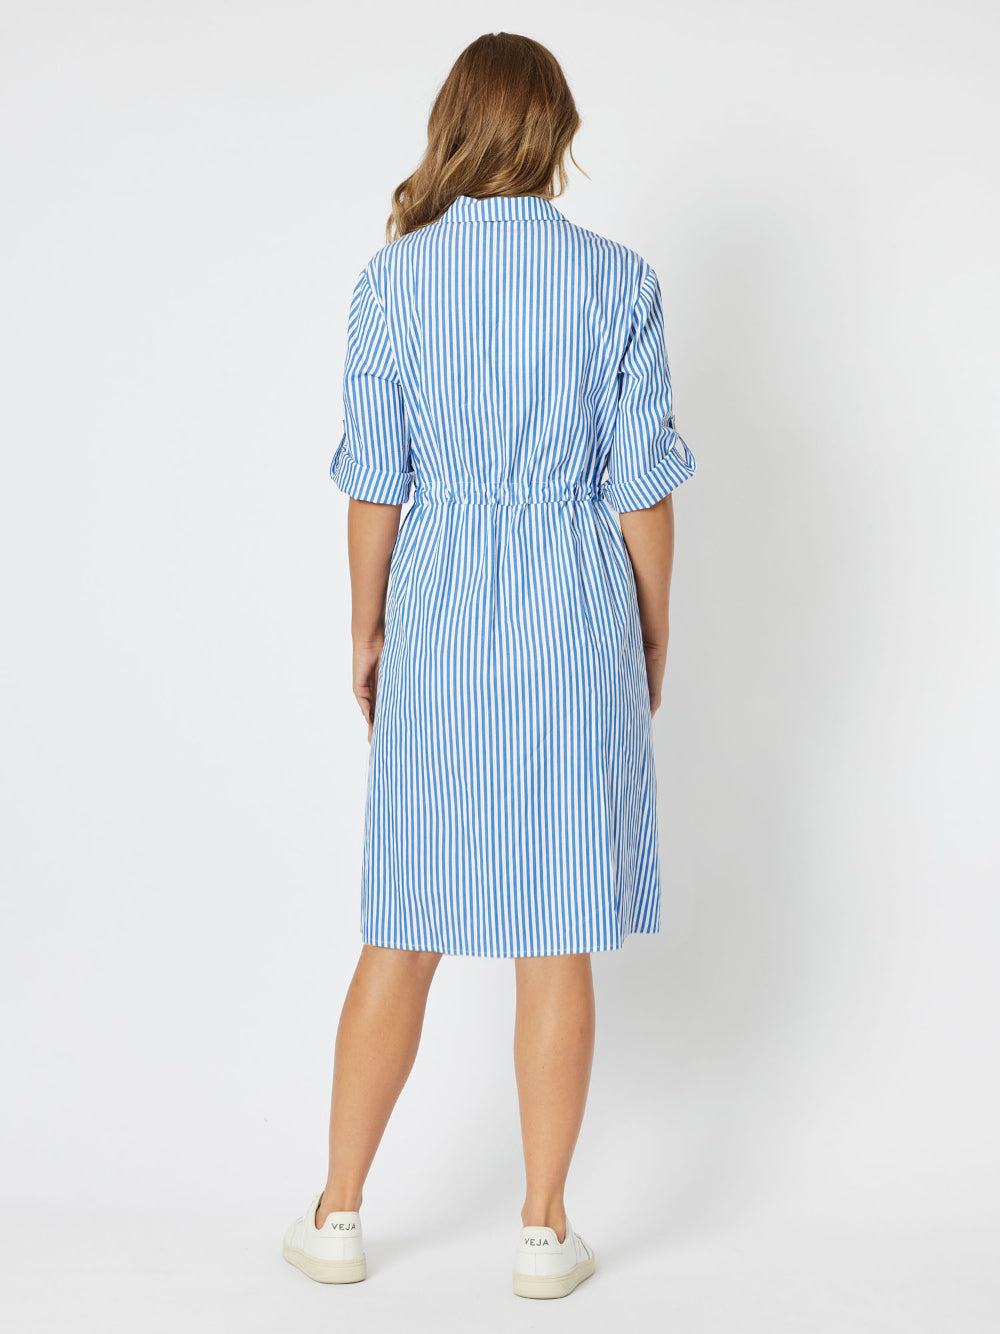 Shirty Stripe Cotton Dress - Blue